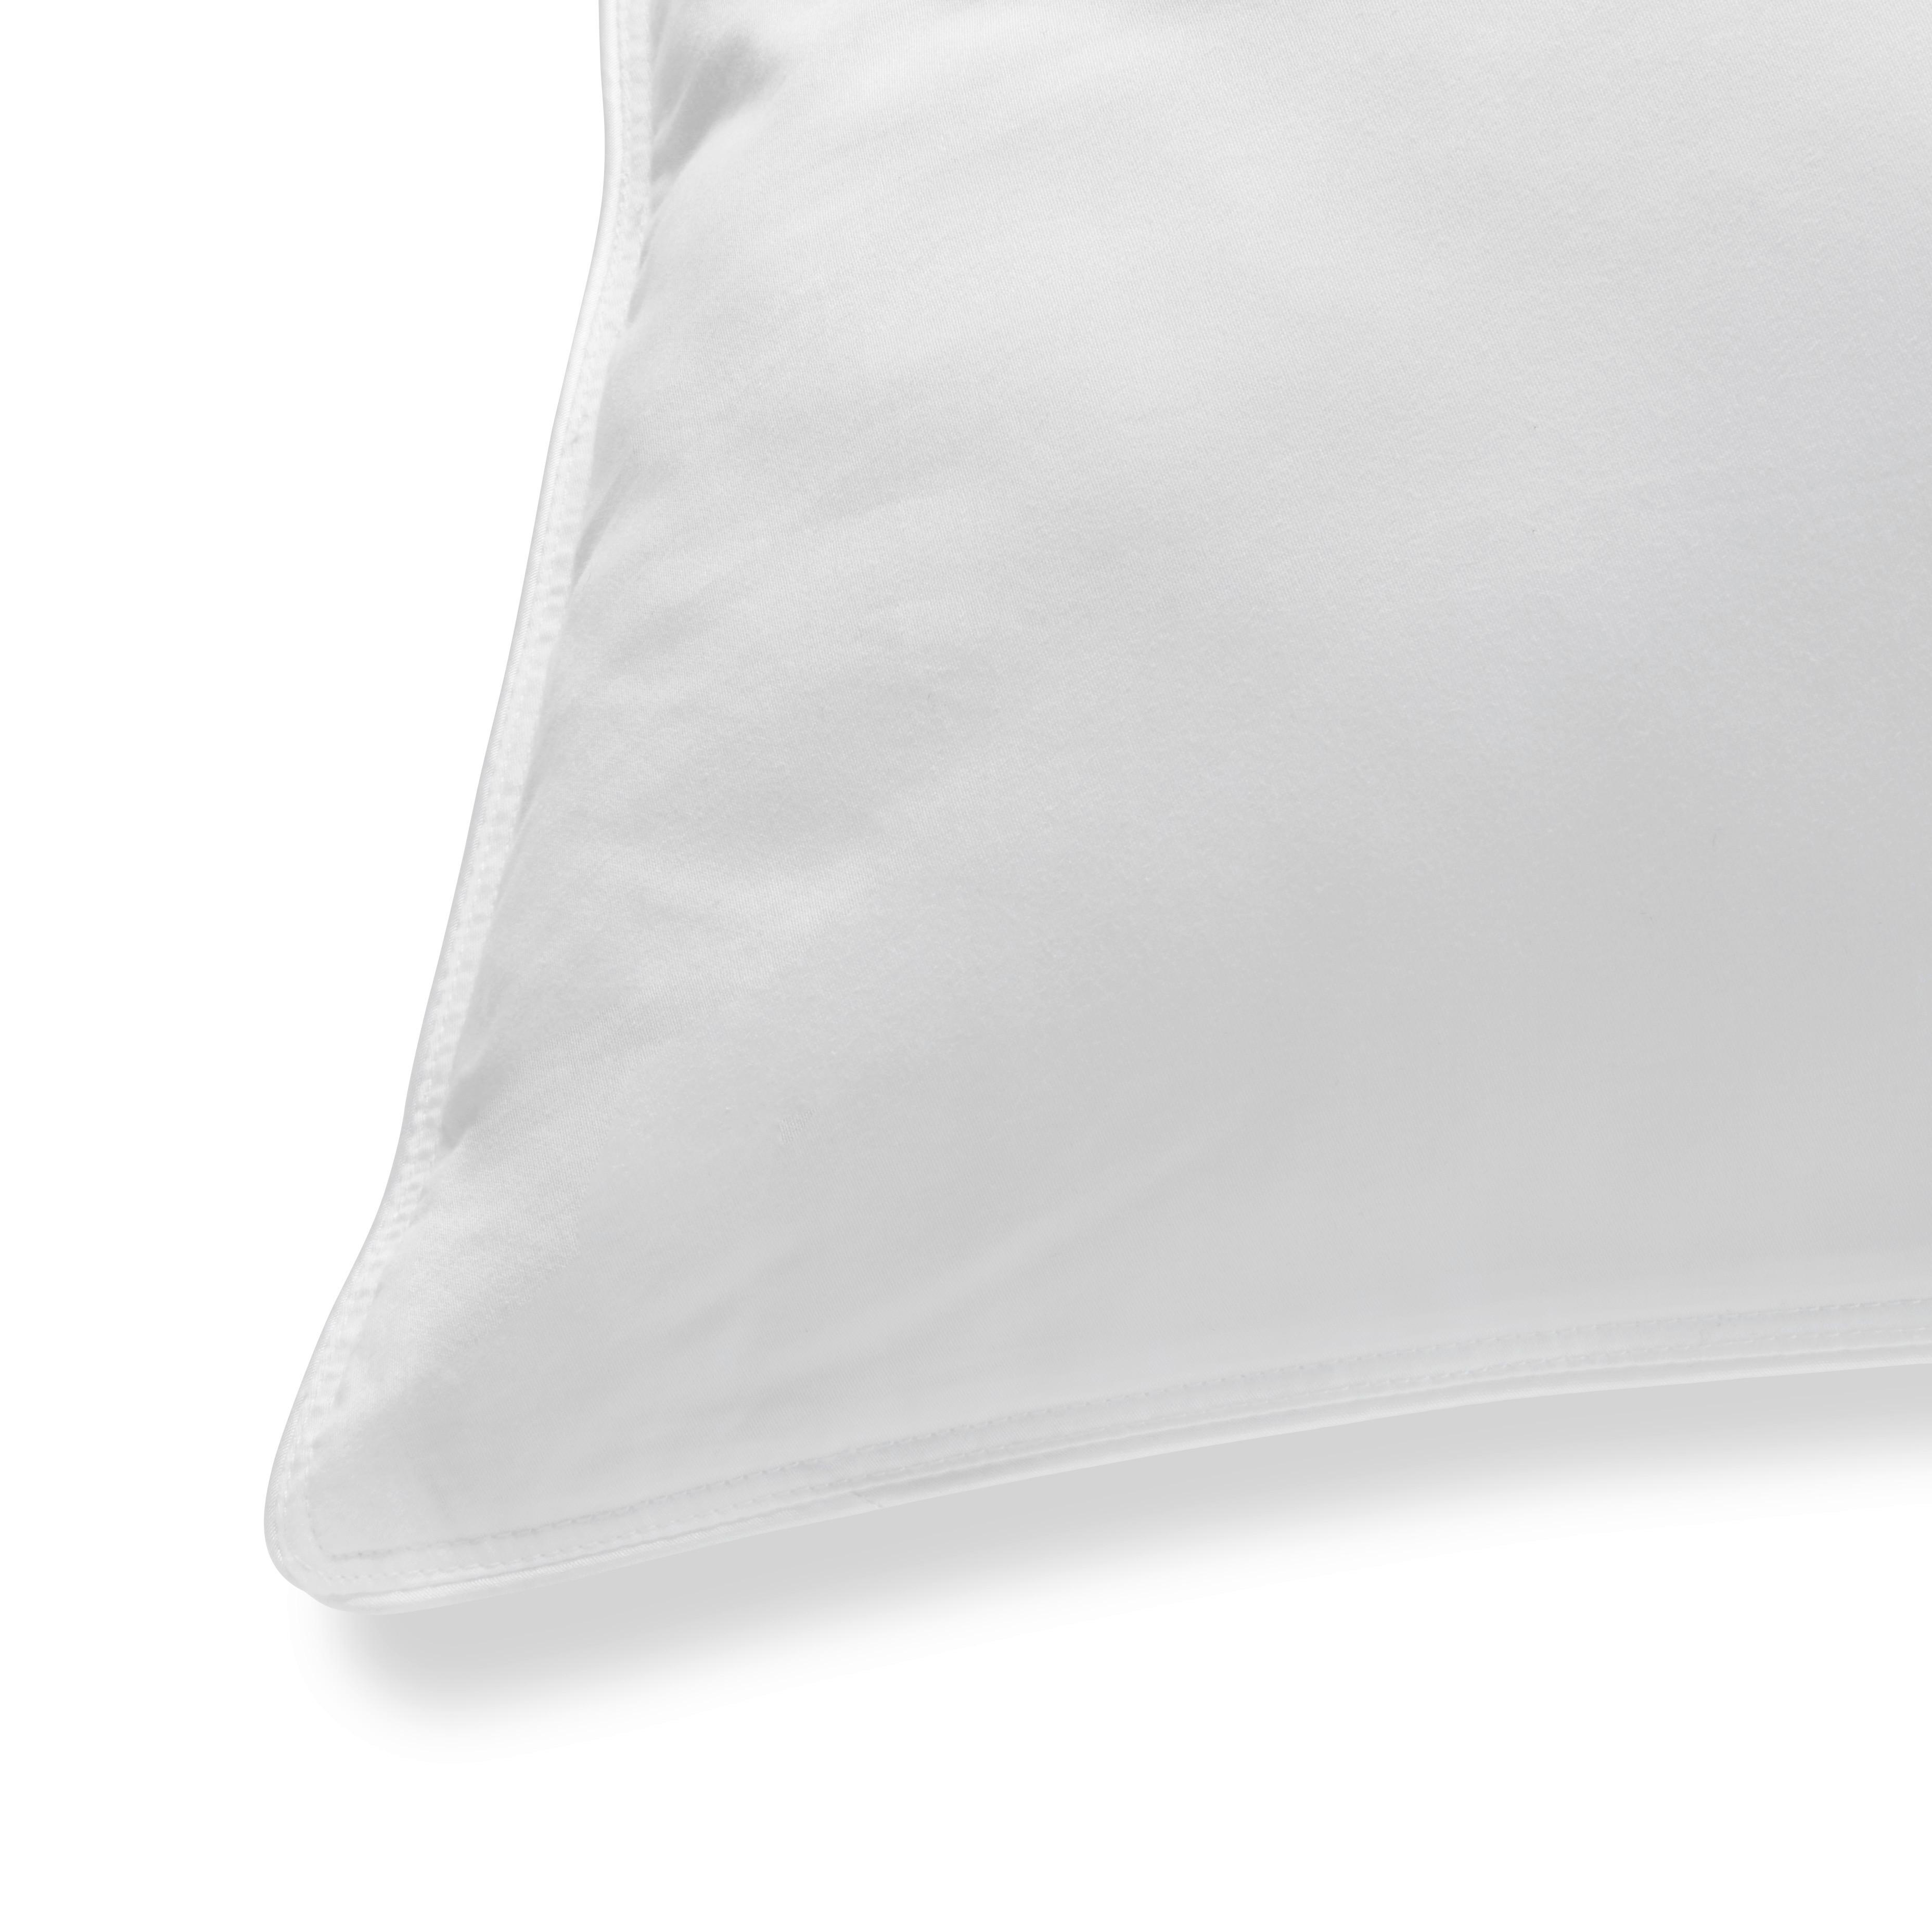 Kopfpolster Vegandown ca. 40x80cm - Weiß, KONVENTIONELL, Textil (40/80cm) - Premium Living